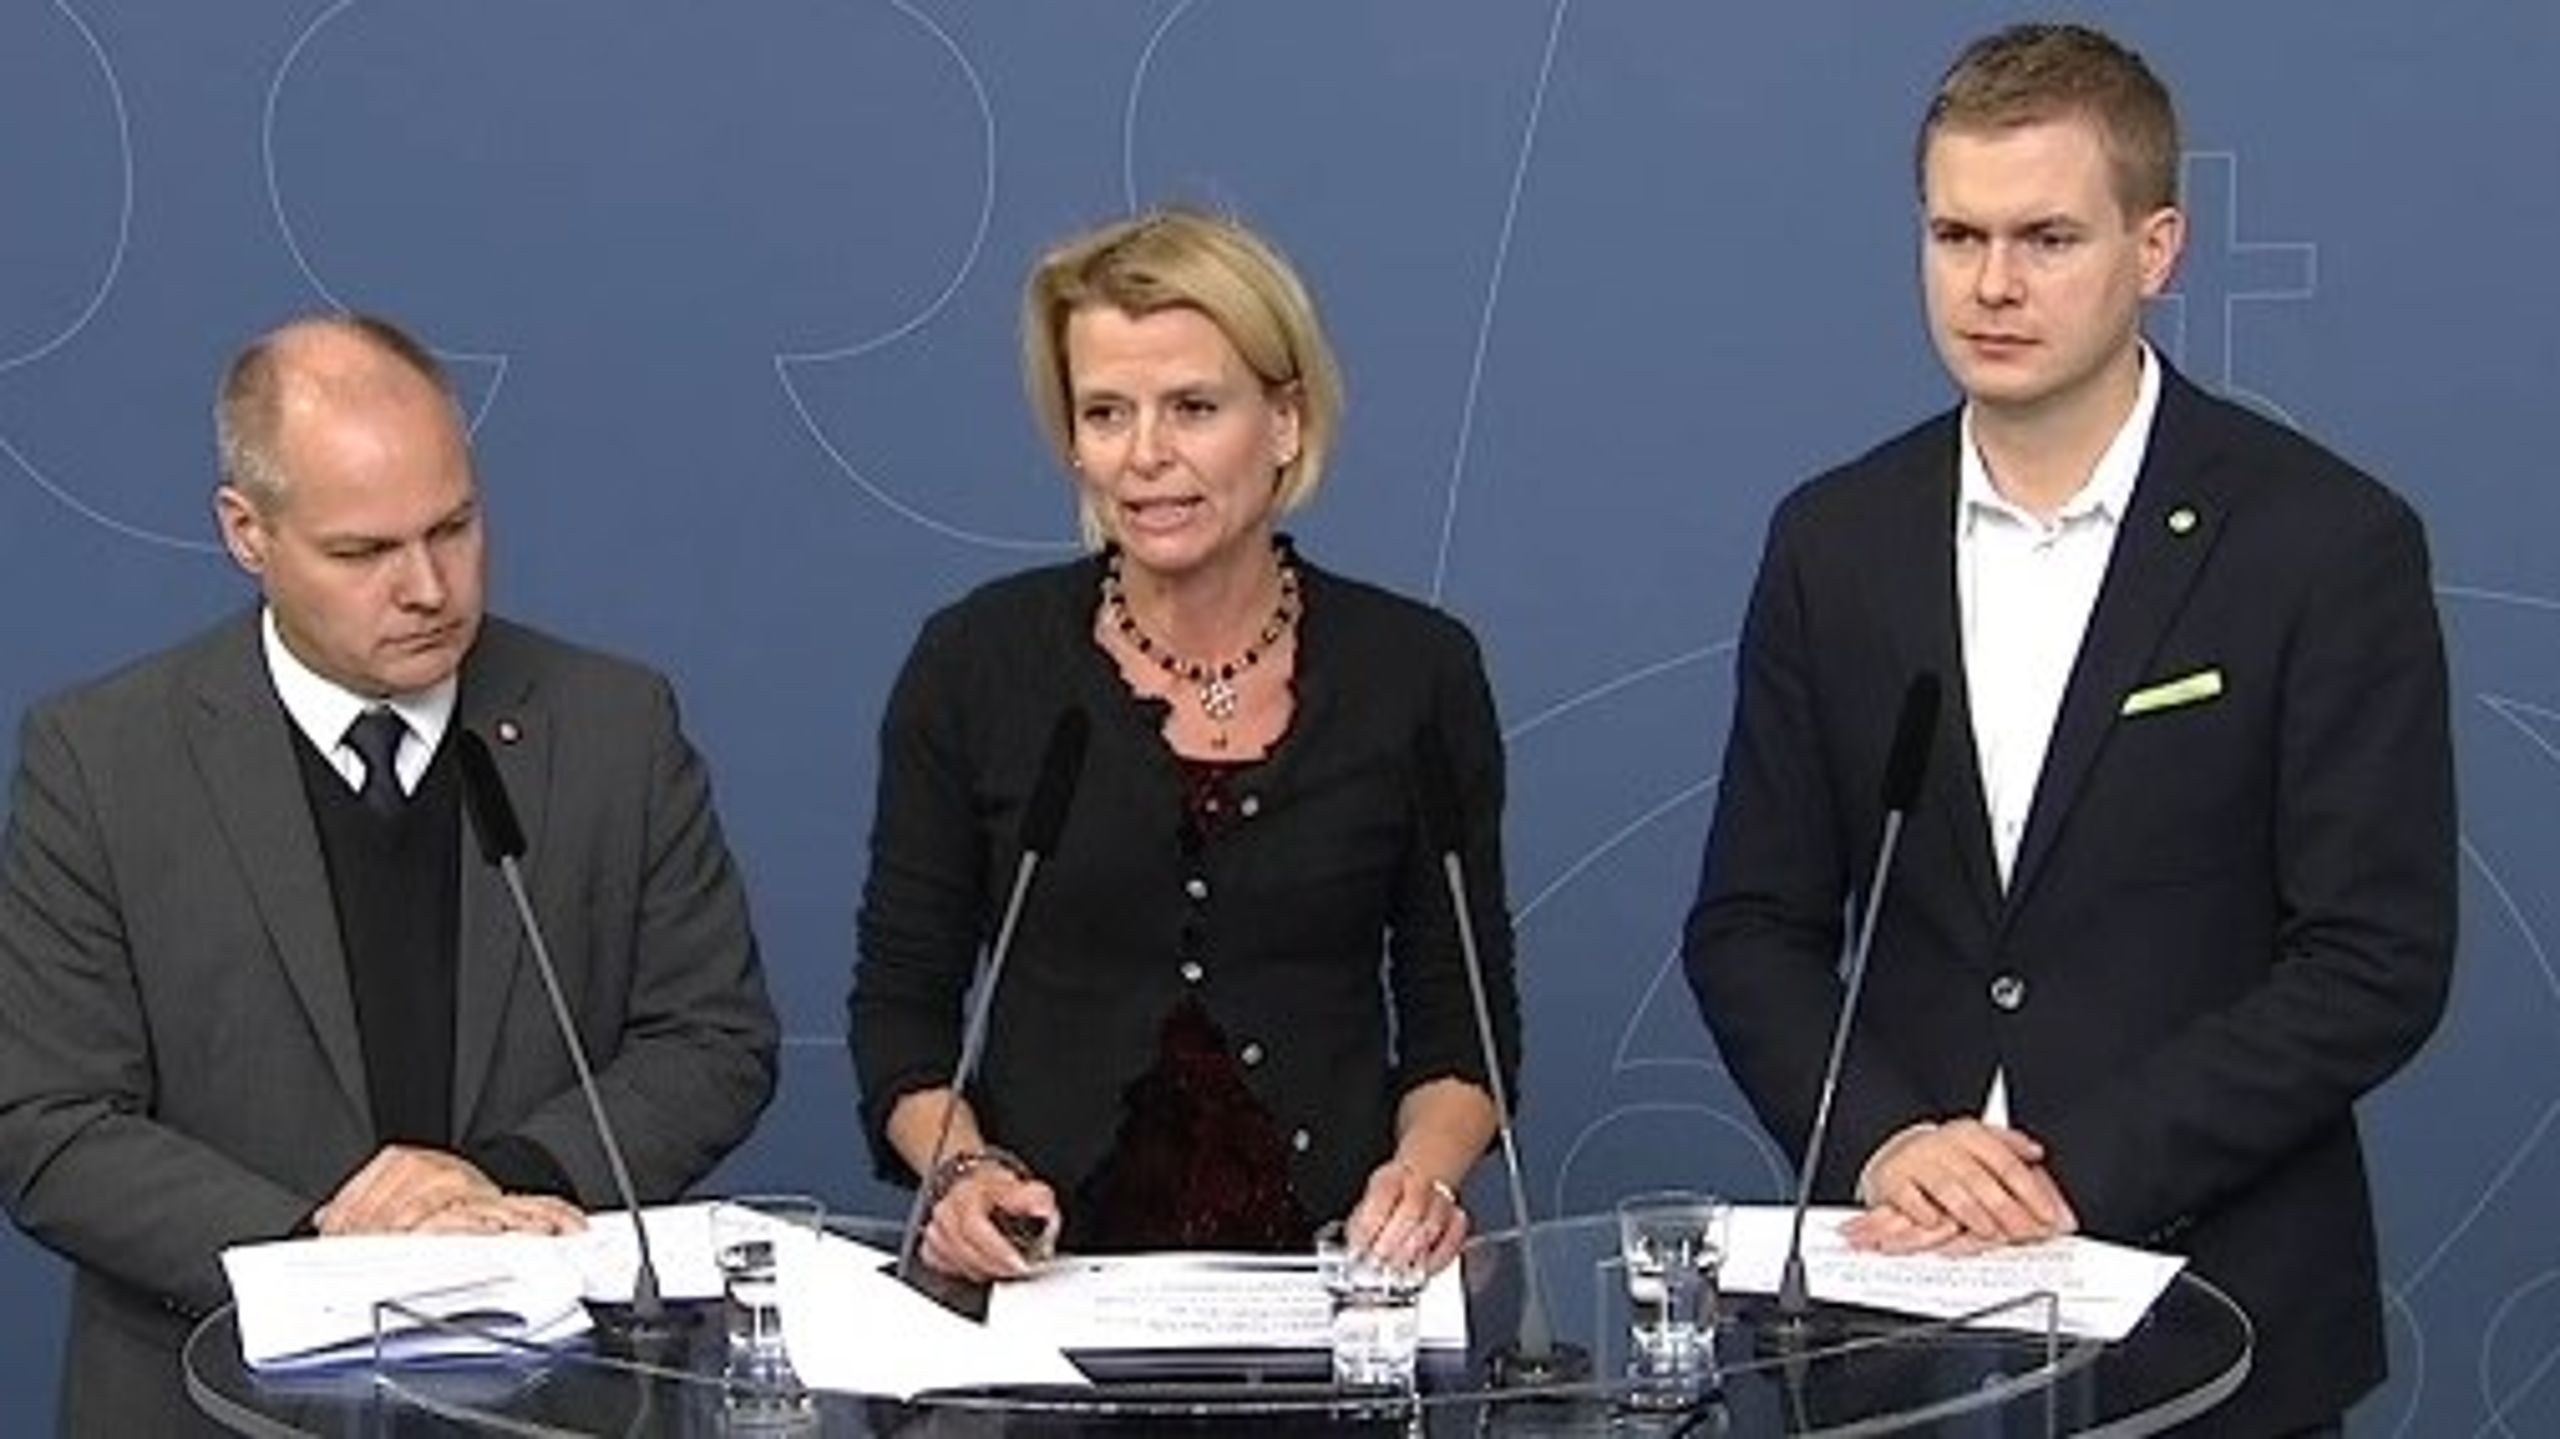 Justitieminister Morgan Johansson, jämställdhetsminister Åsa Regnér och utbildningsminister Gustav Fridolin presenterar regeringens strategi för att motverka mäns våld mot kvinnor.